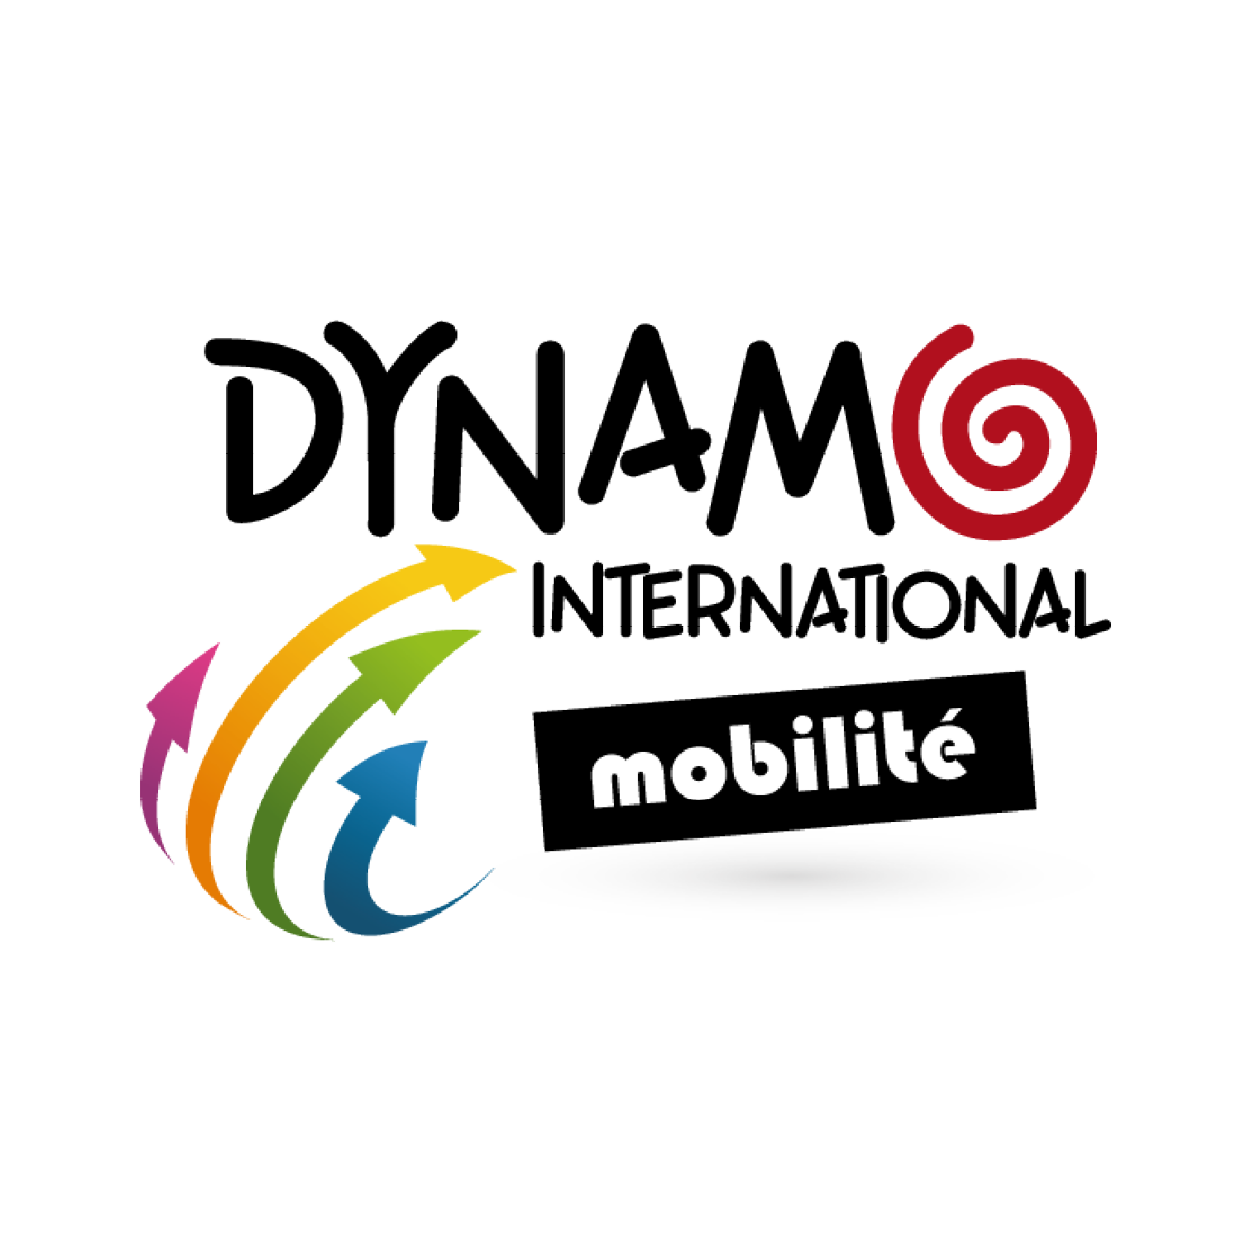 LOGO - Dynamo-International-mobilite-carre.png